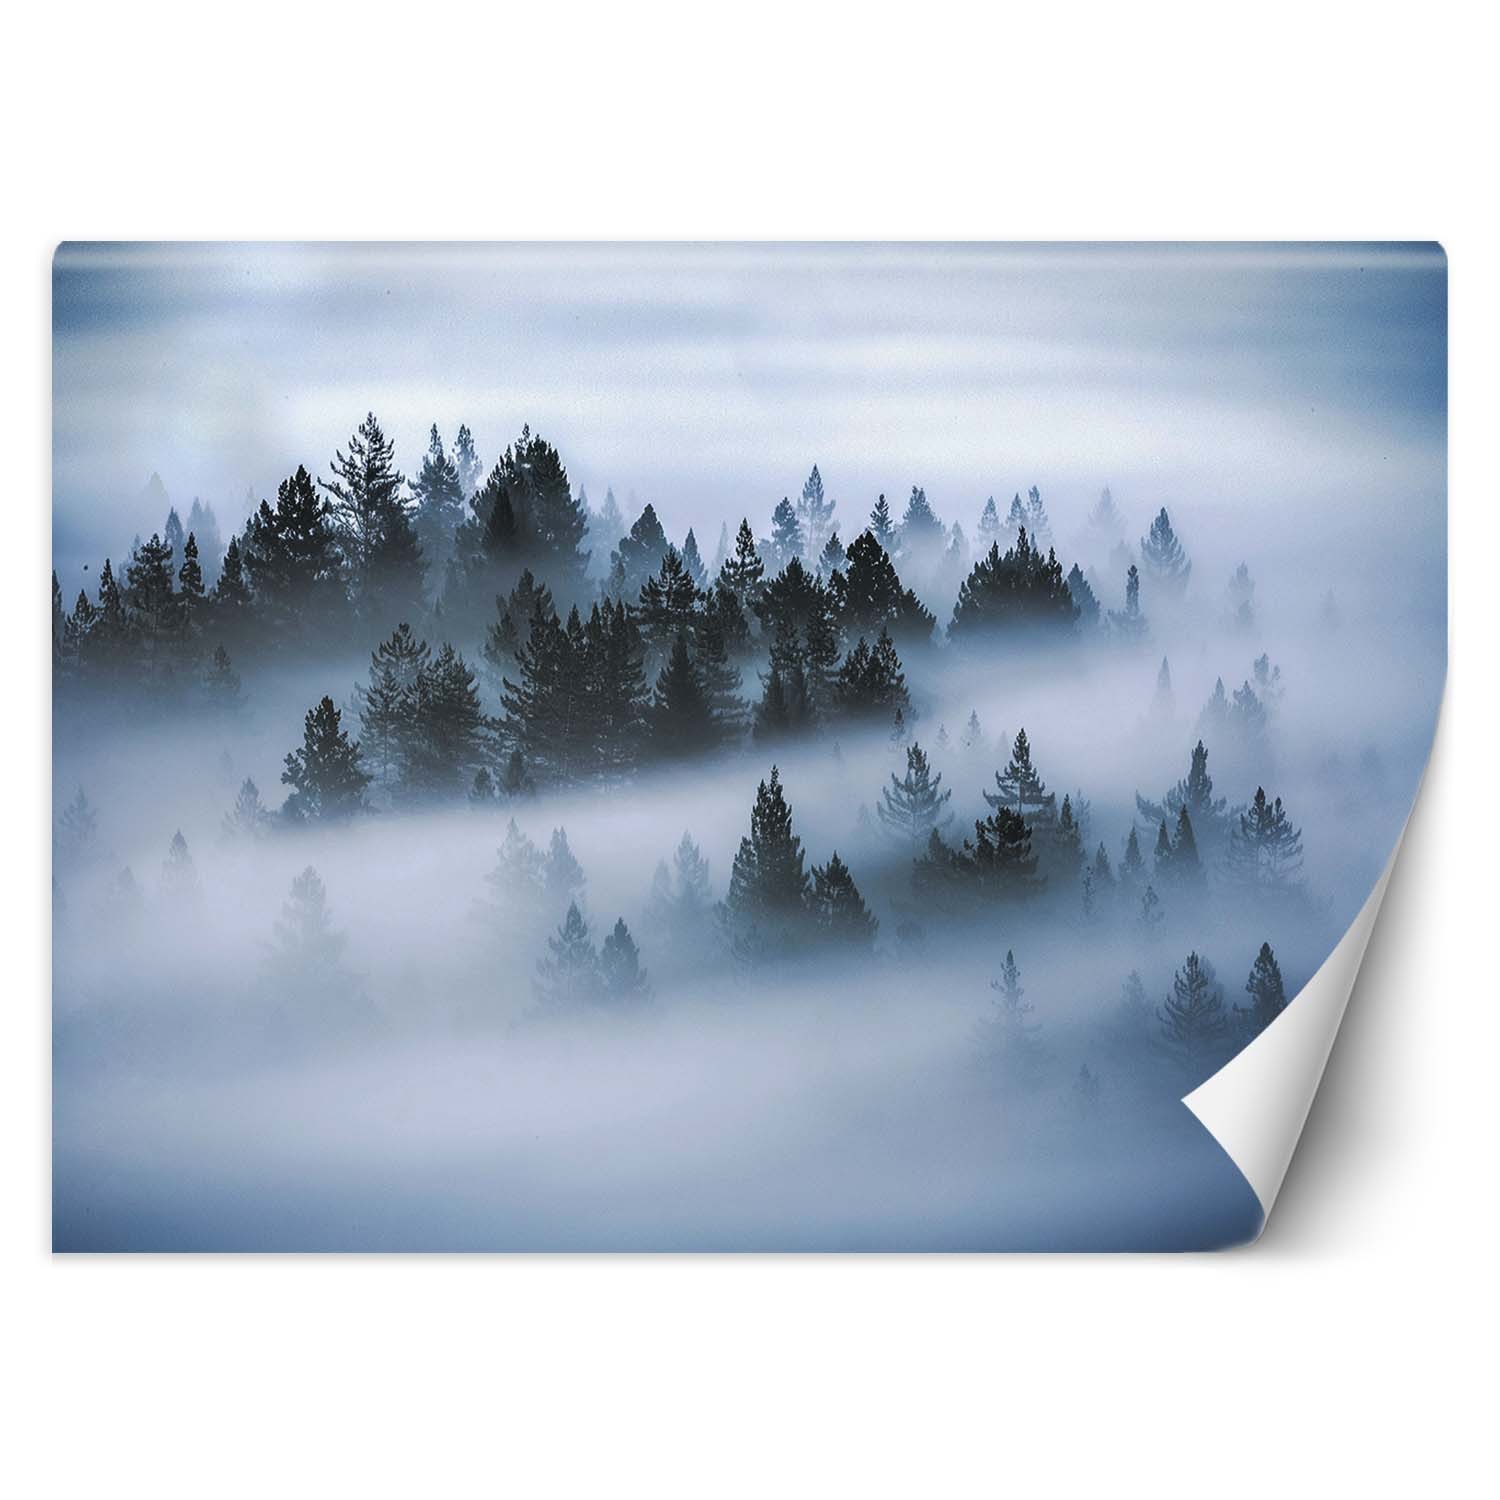 Trend24 – Behang – Bos In De Mist – Behangpapier – Fotobehang Natuur – Behang Woonkamer – 450x315x2 cm – Incl. behanglijm